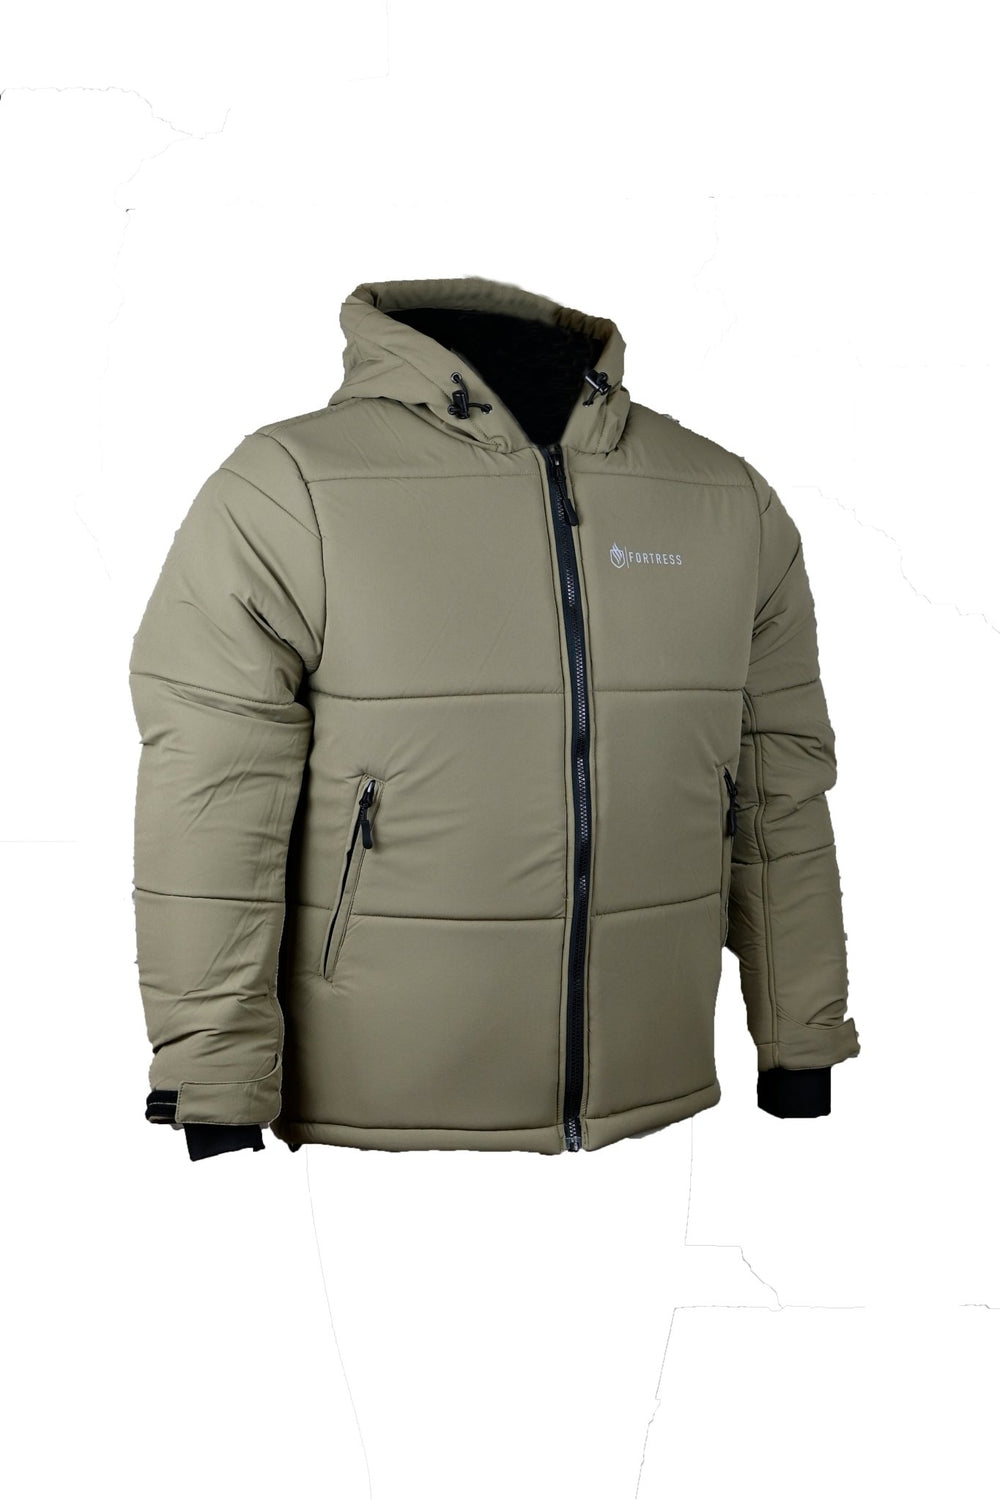 Tundra Coat 2.0 - Fortress Clothing